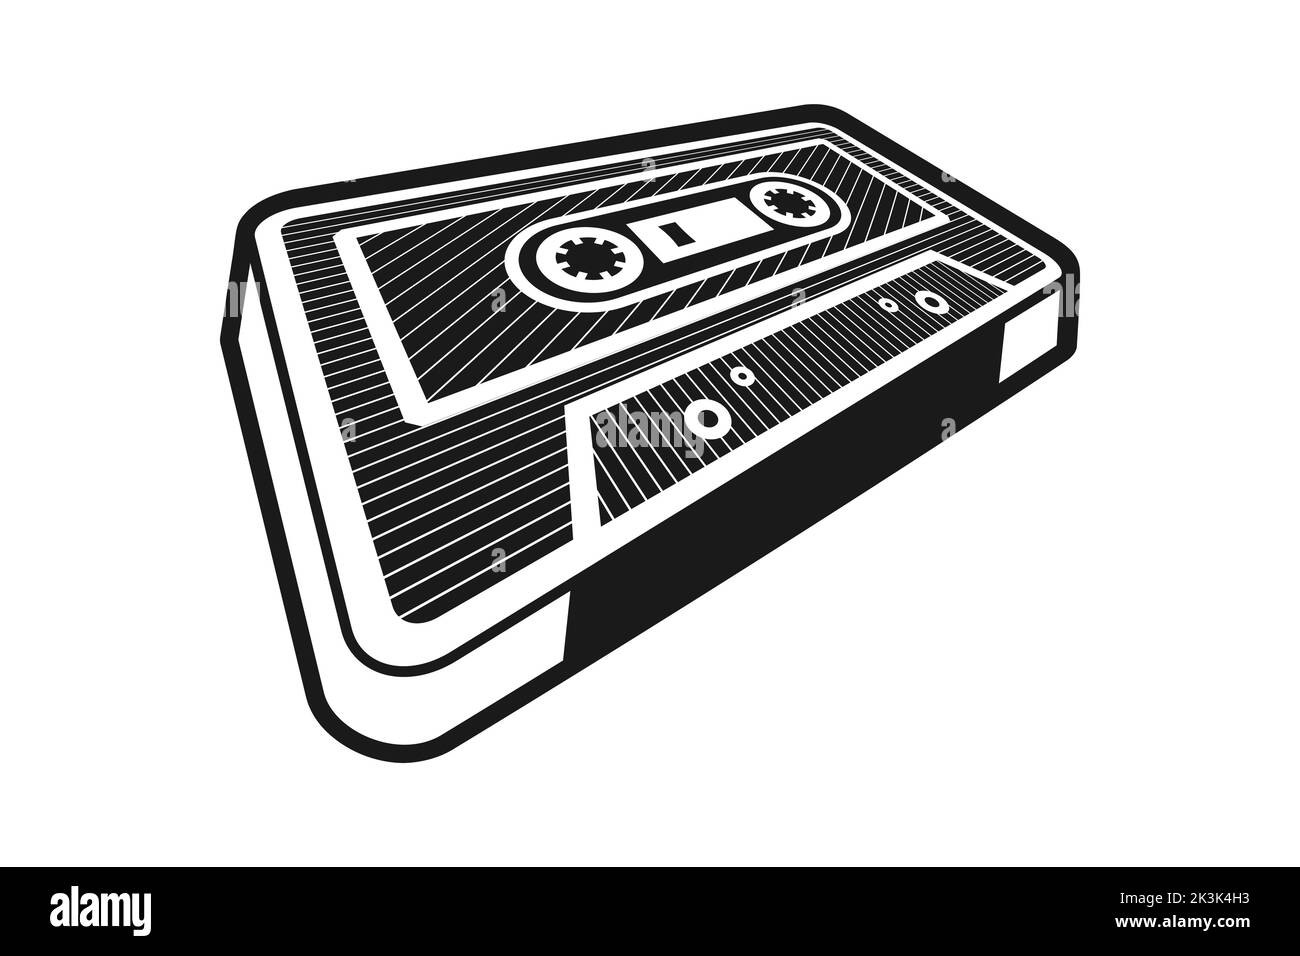 Cassette de musique rétro sur fond blanc. Cassette audio 3D en perspective. élément de design vintage des années 80. Noir et blanc monochrome vectoriel Illustration de Vecteur